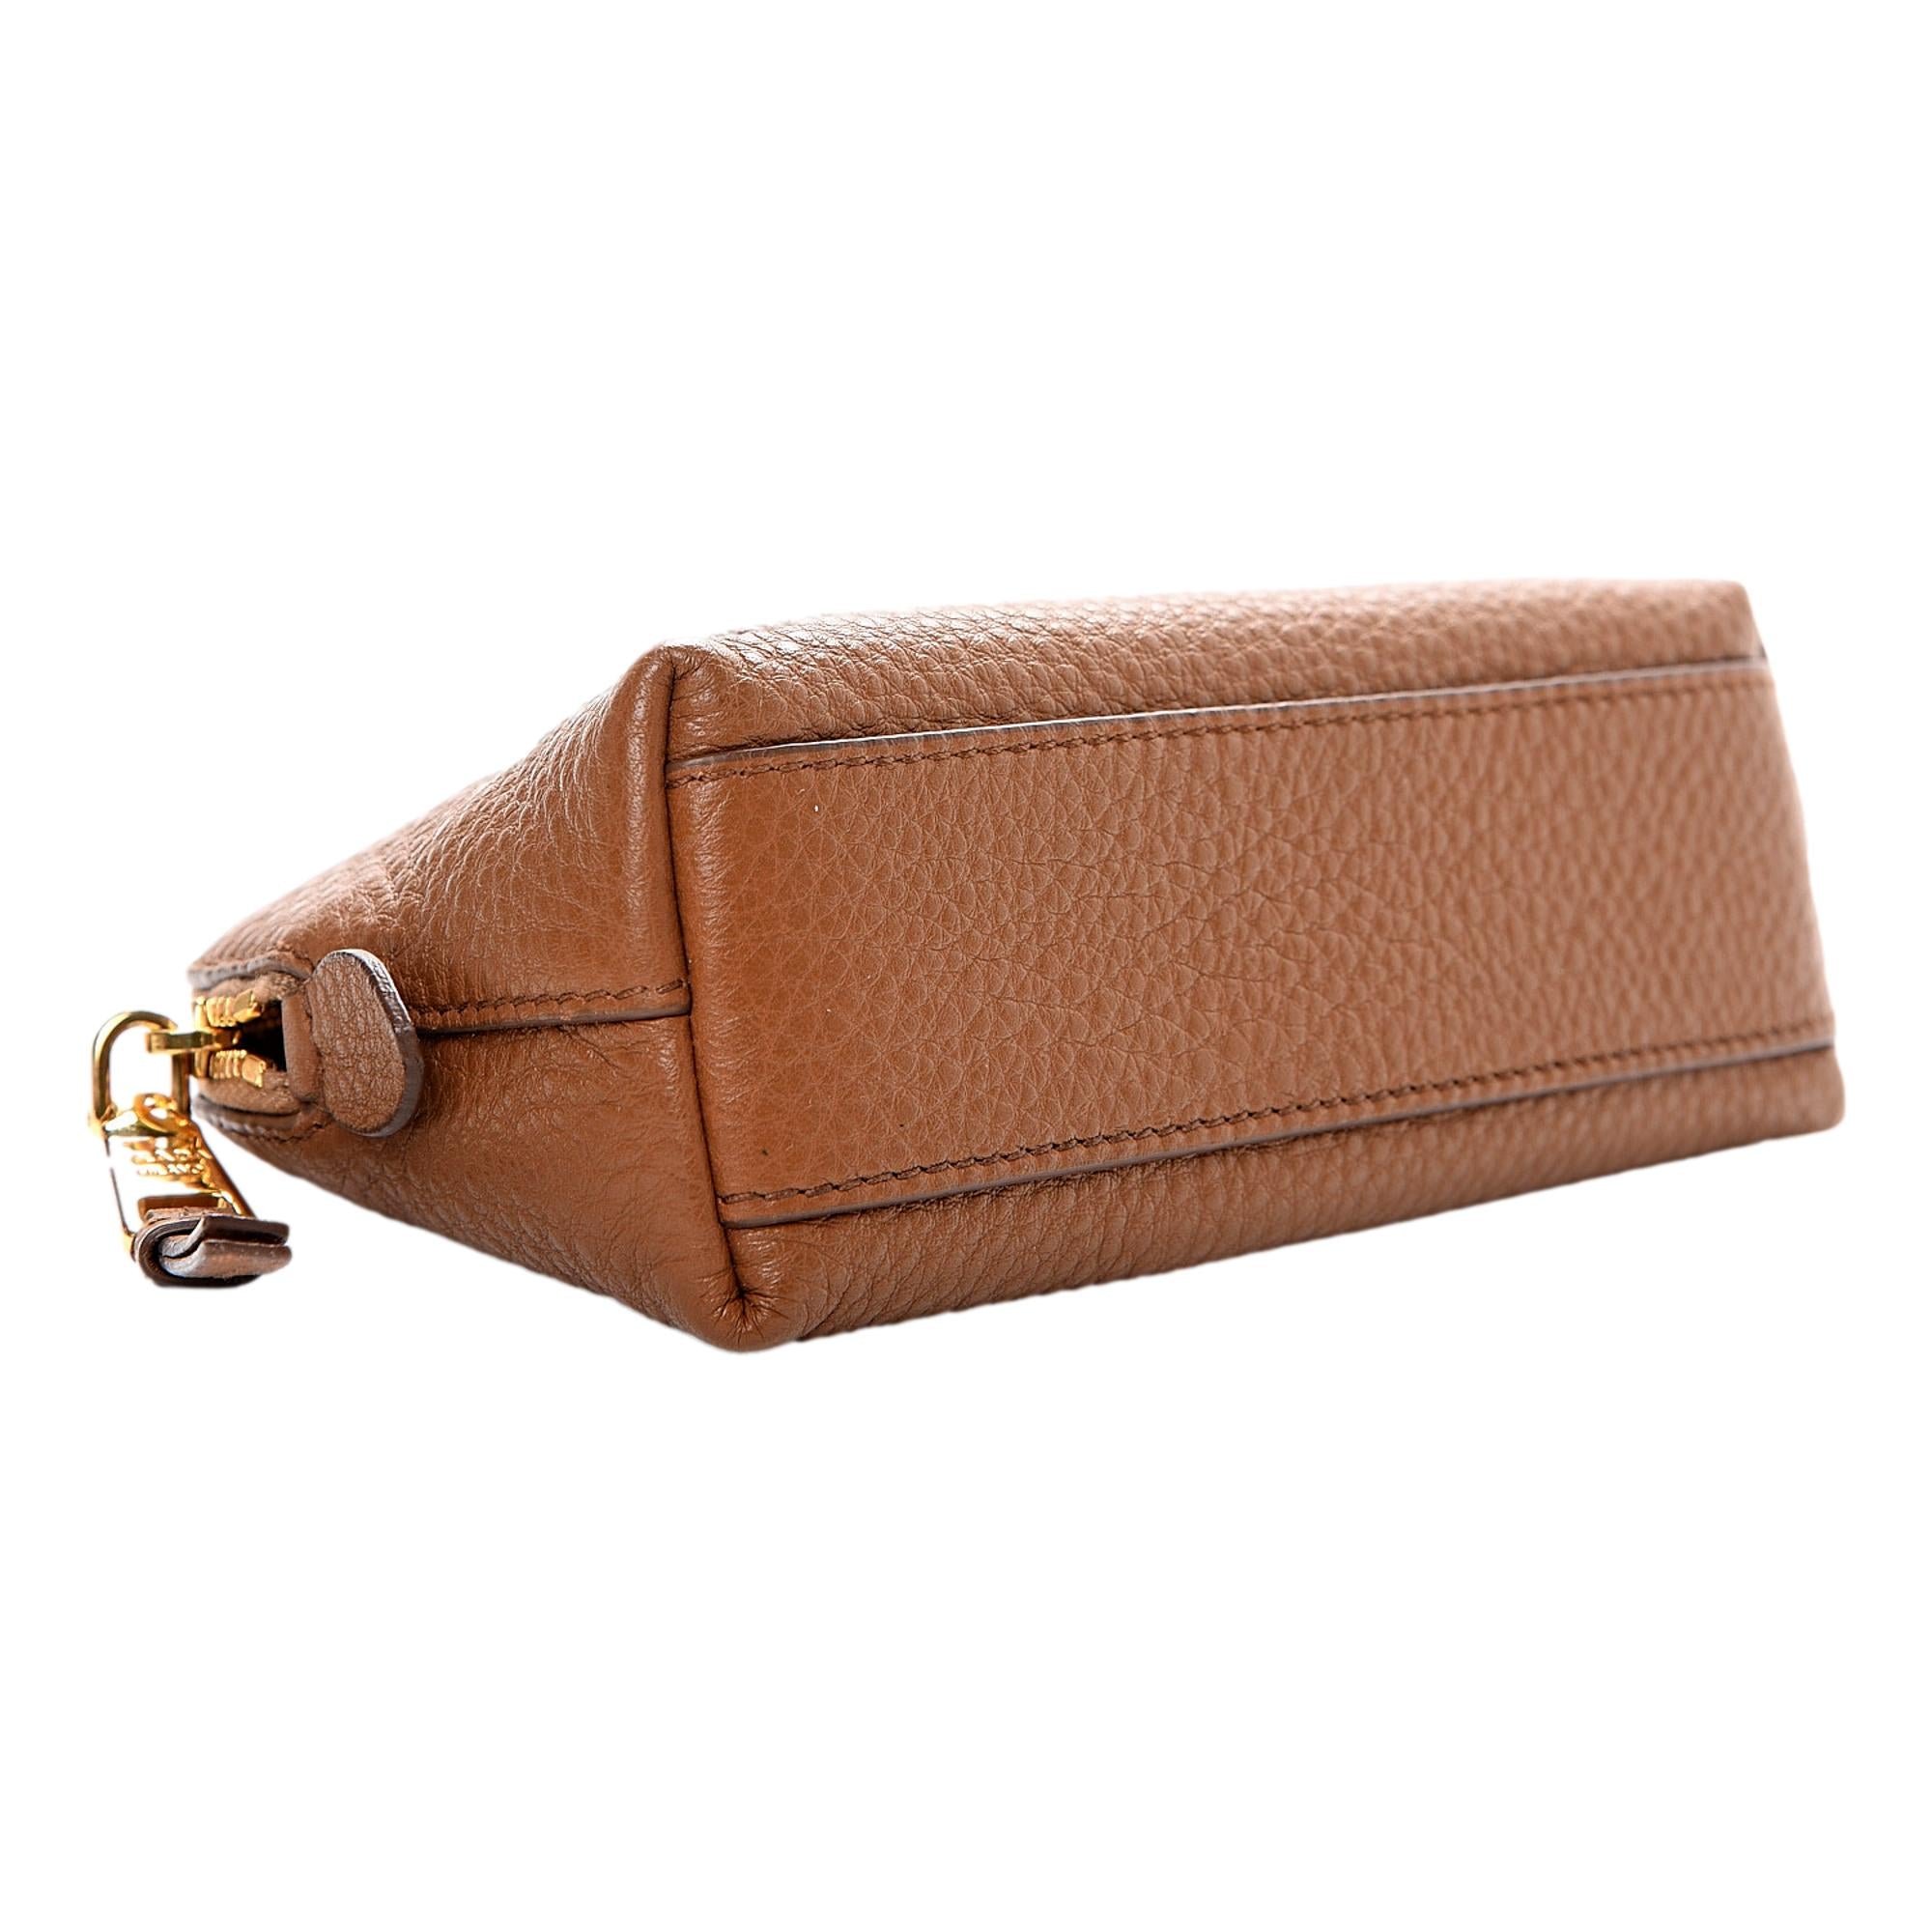 Prada Vitello Daino Cannella Brown Leather Small Cosmetic Case Clutch Bag